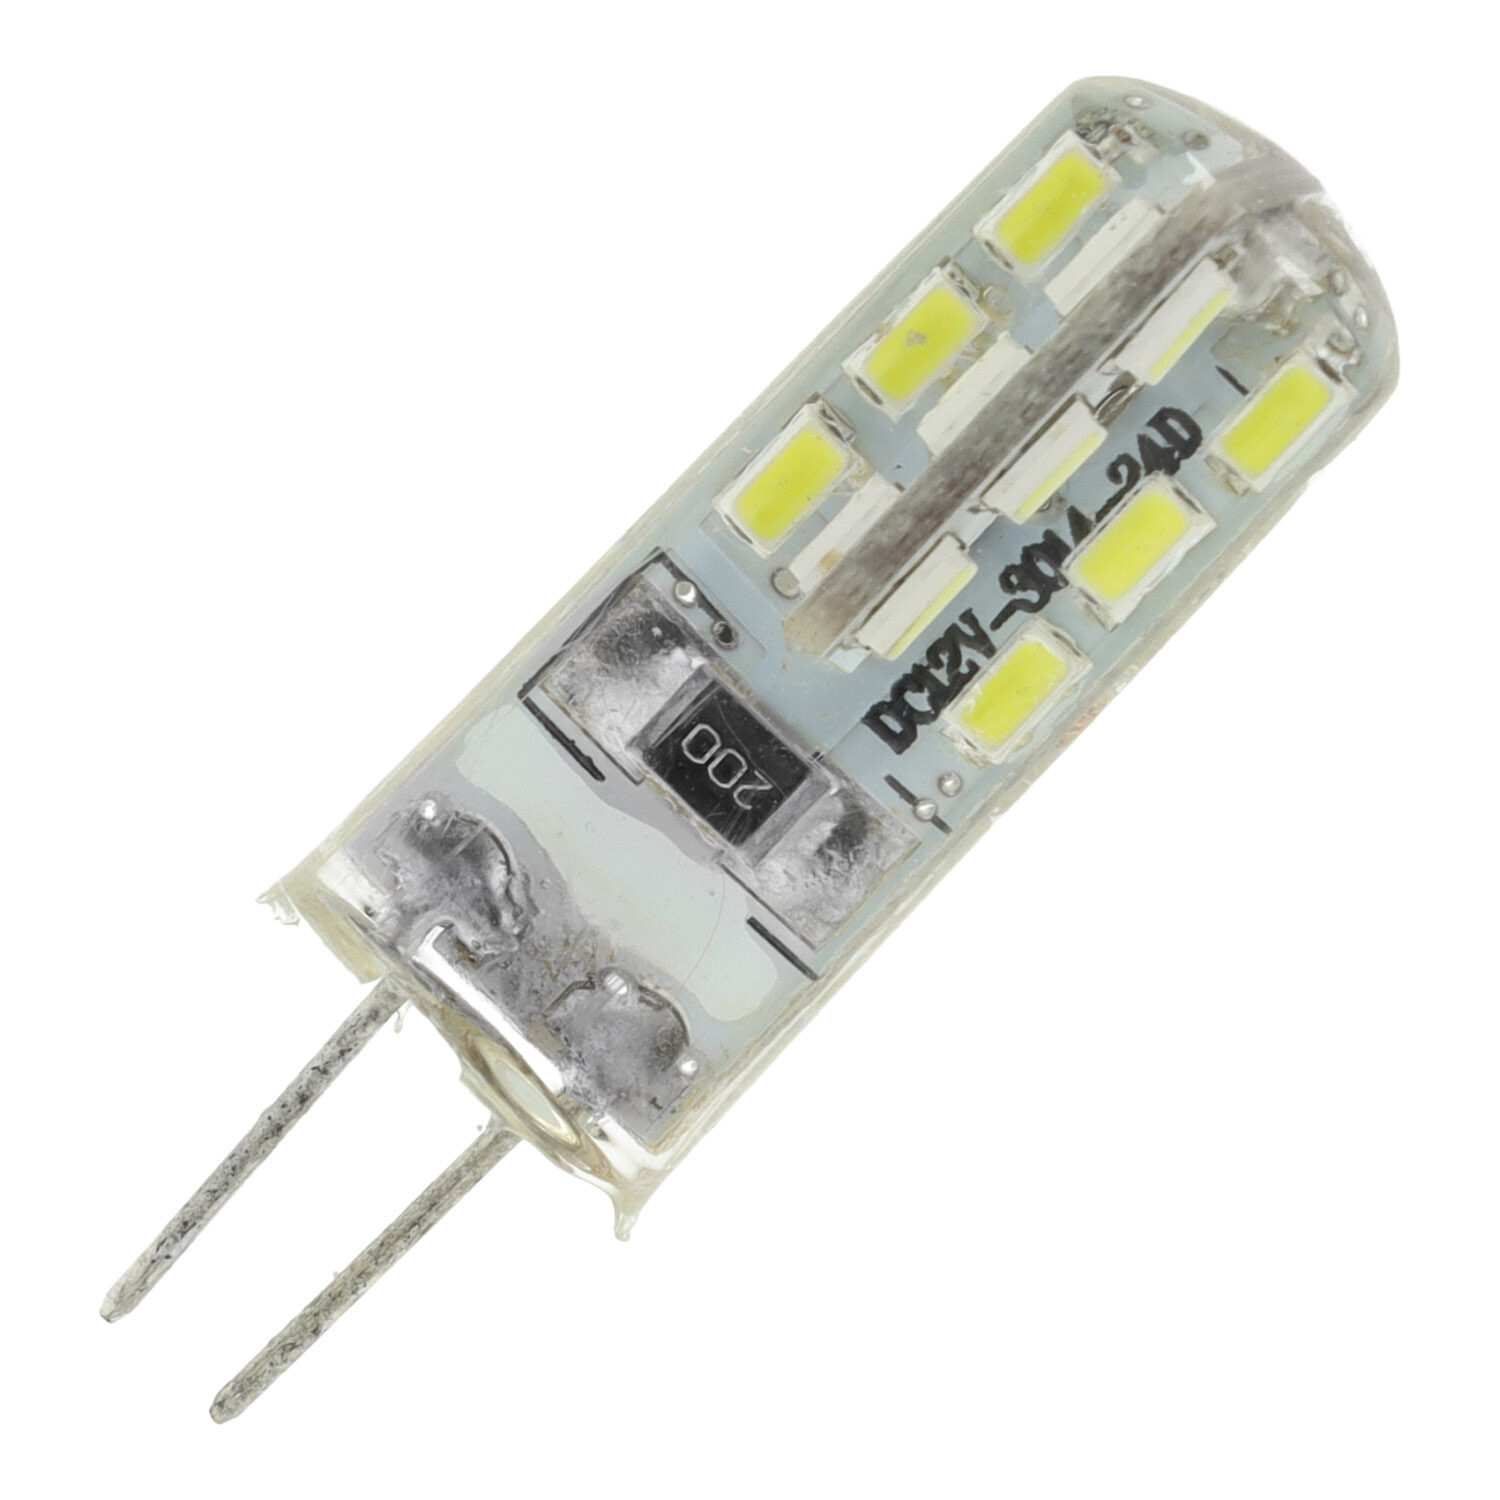 Ampoule LED G4 1.5W (220V) - Ampoules LED - Ampoules LED G4